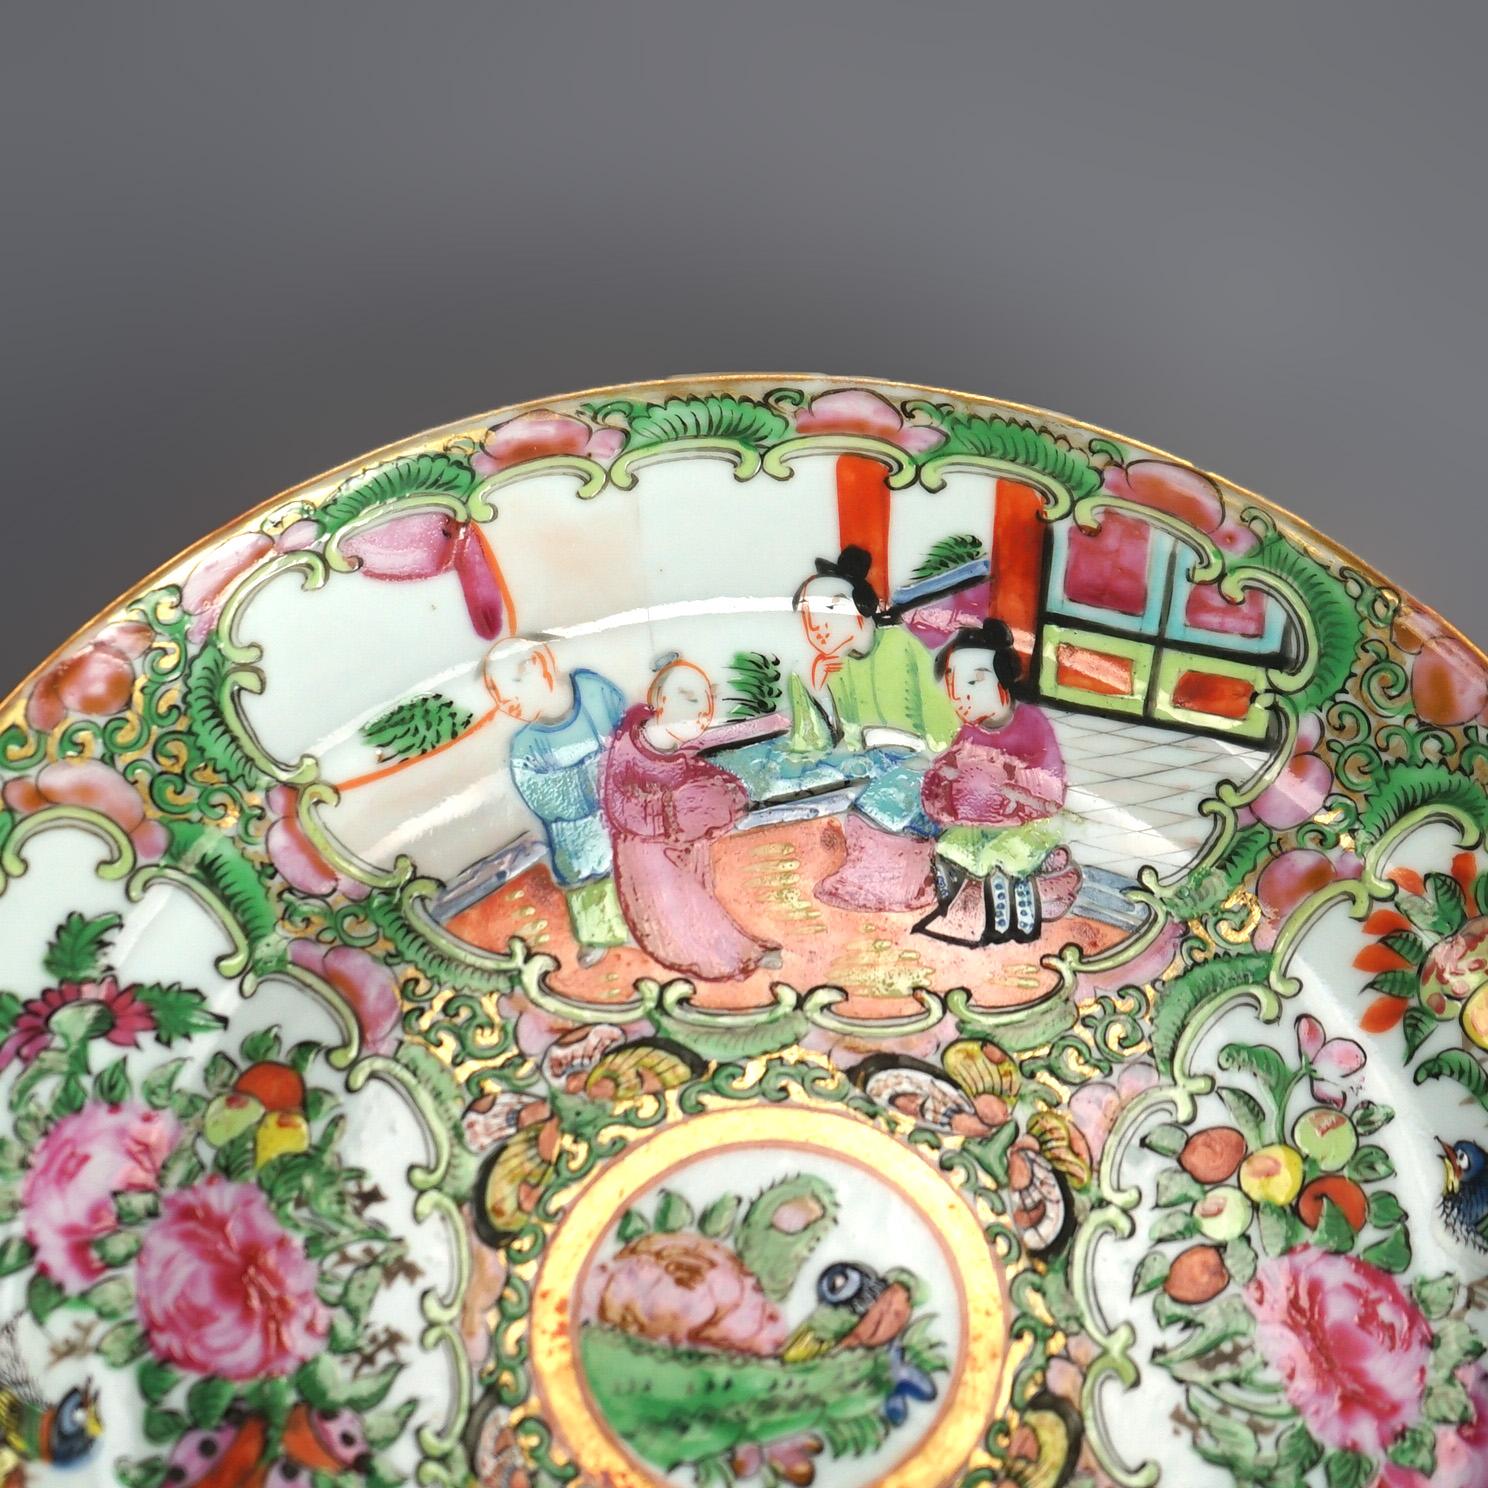 Assiettes anciennes en porcelaine chinoise à médaillon de roses avec réserves ayant des jardins et des scènes de genre C1900

Mesures - 1 